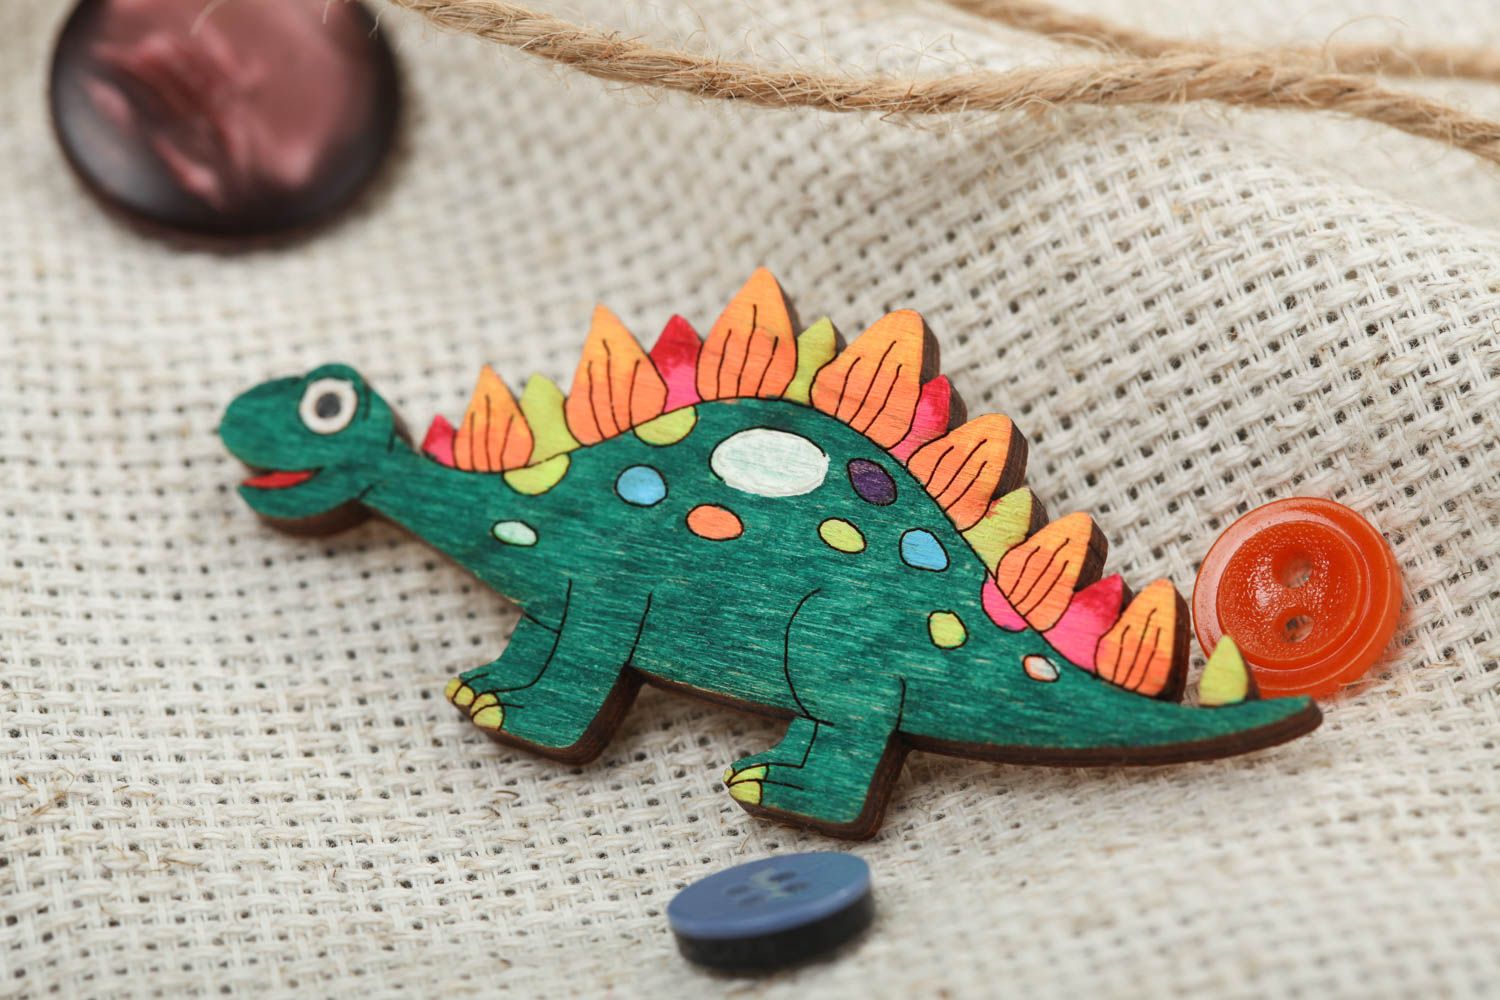 Фанерная брошь расписанная акриловыми красками детская ручной работы Динозаврик фото 1